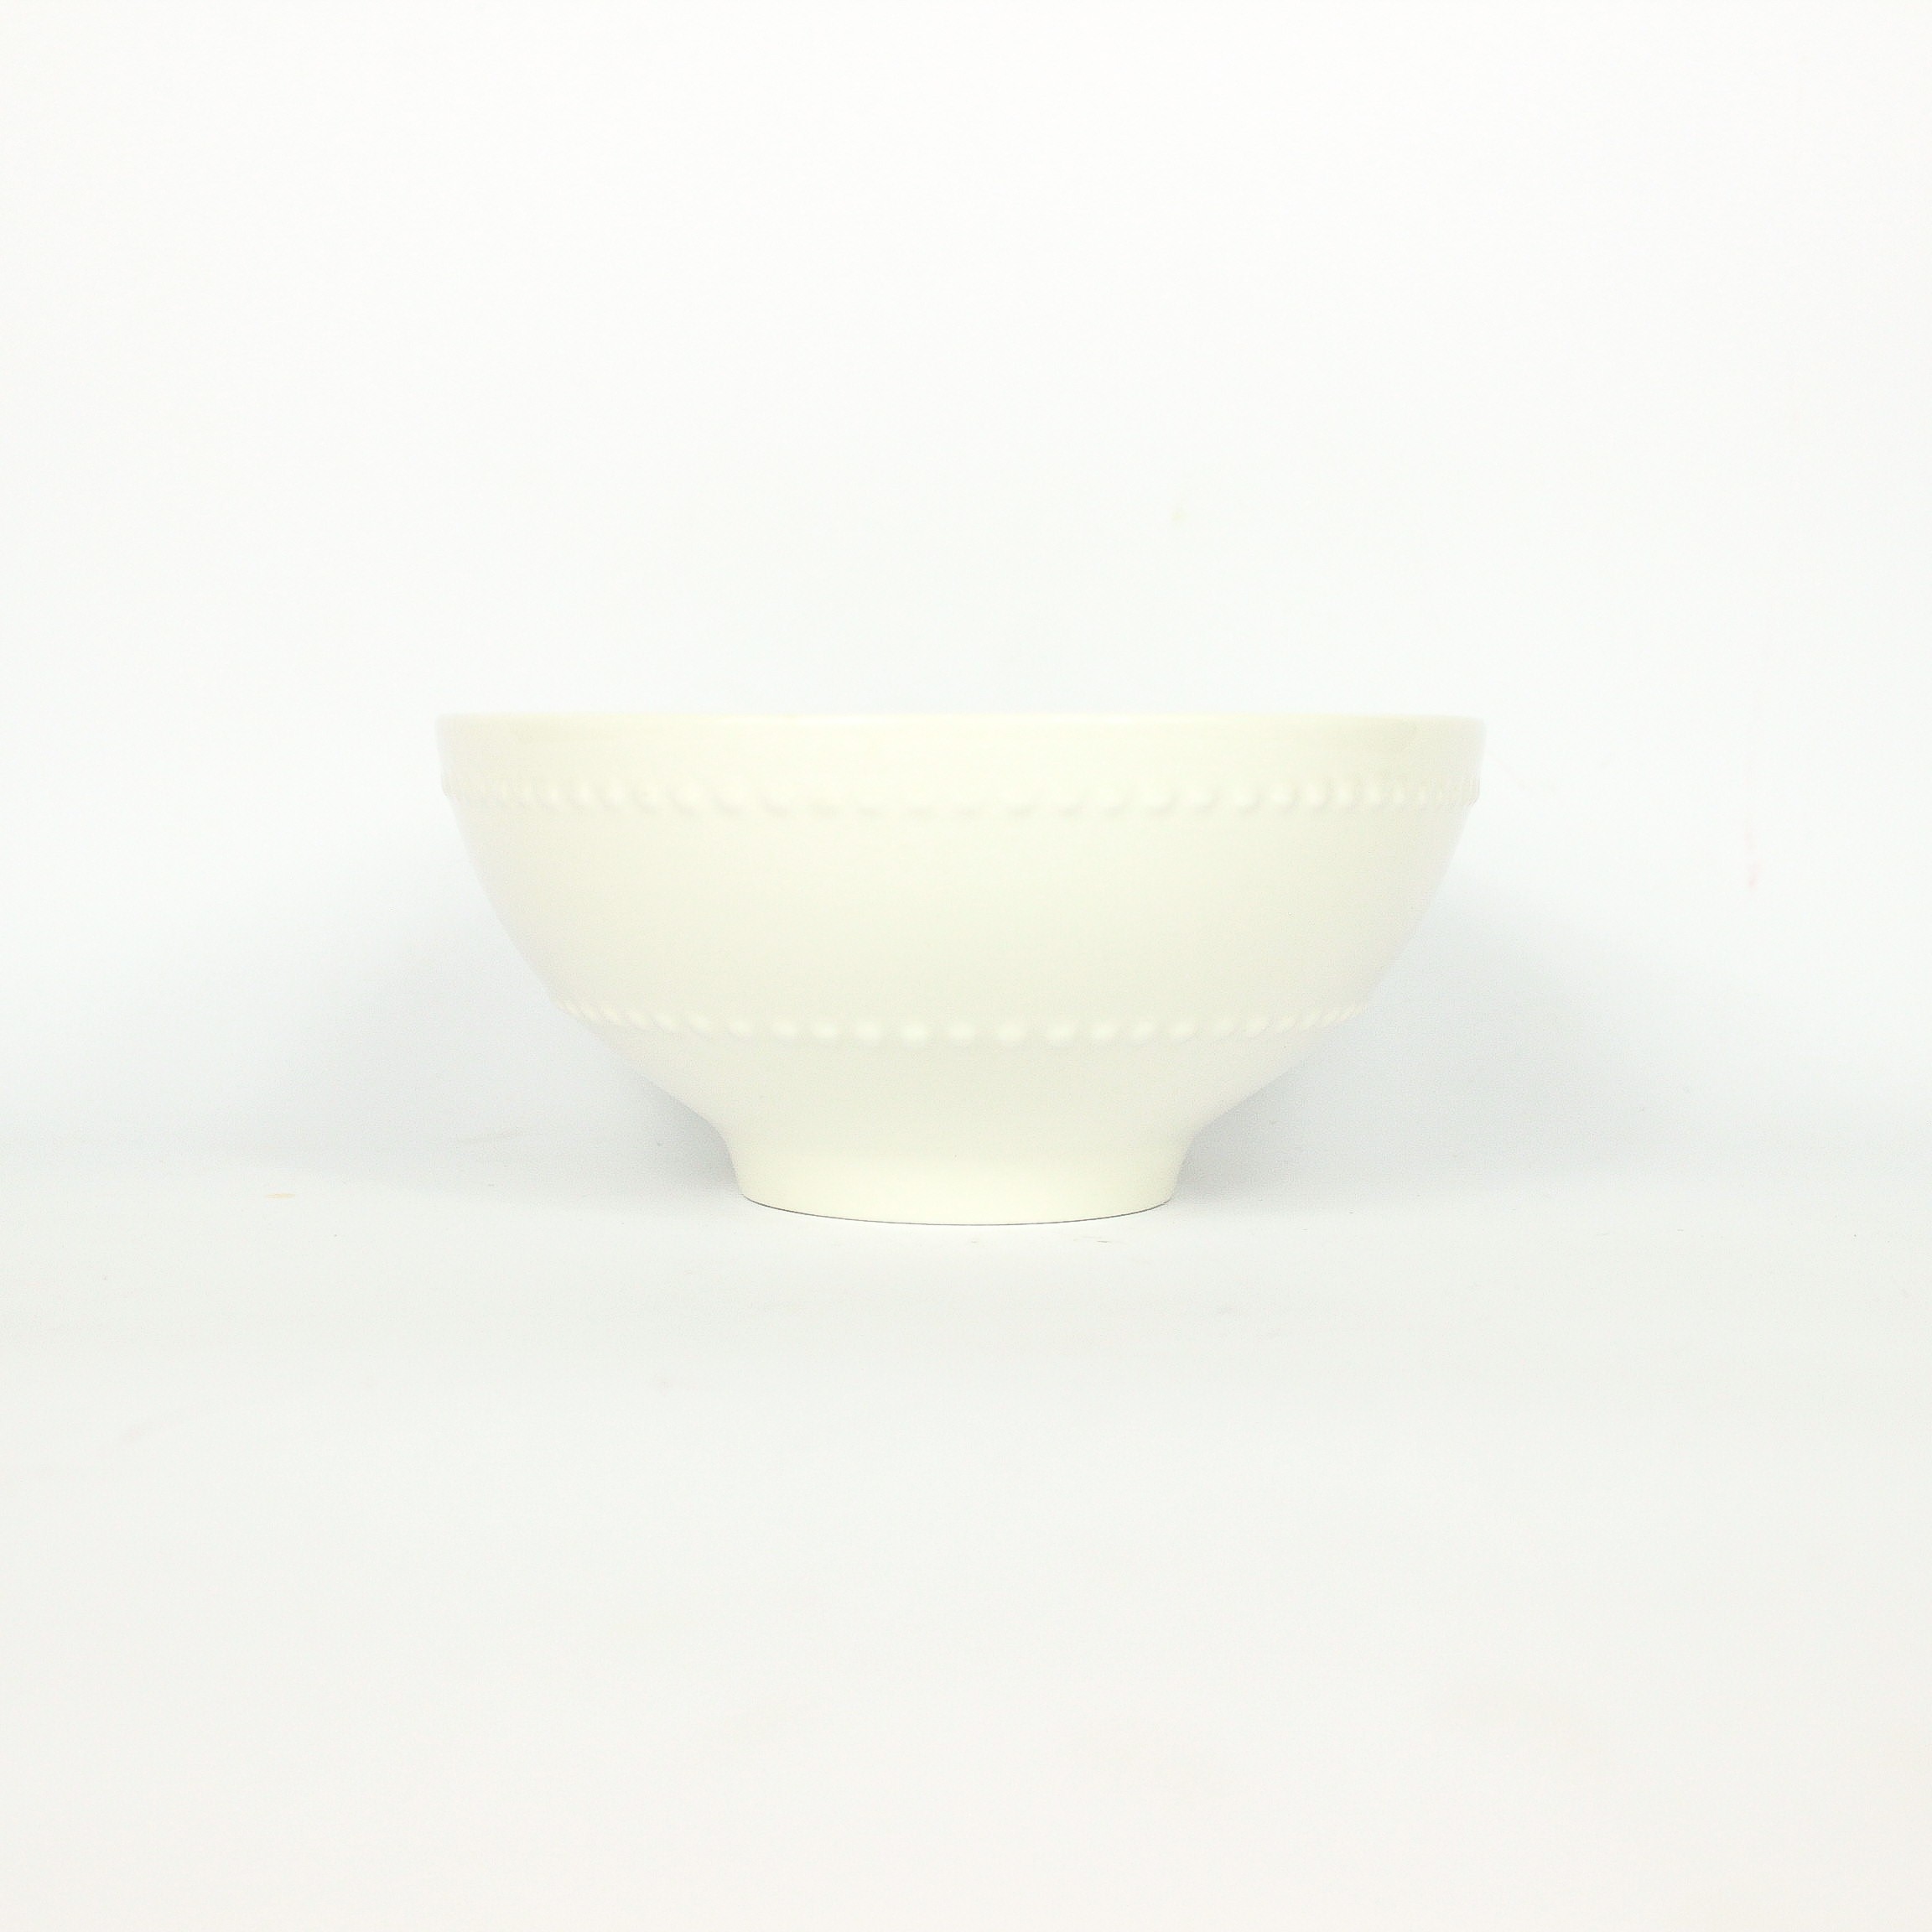 Bowl de Porcelana Points Branco